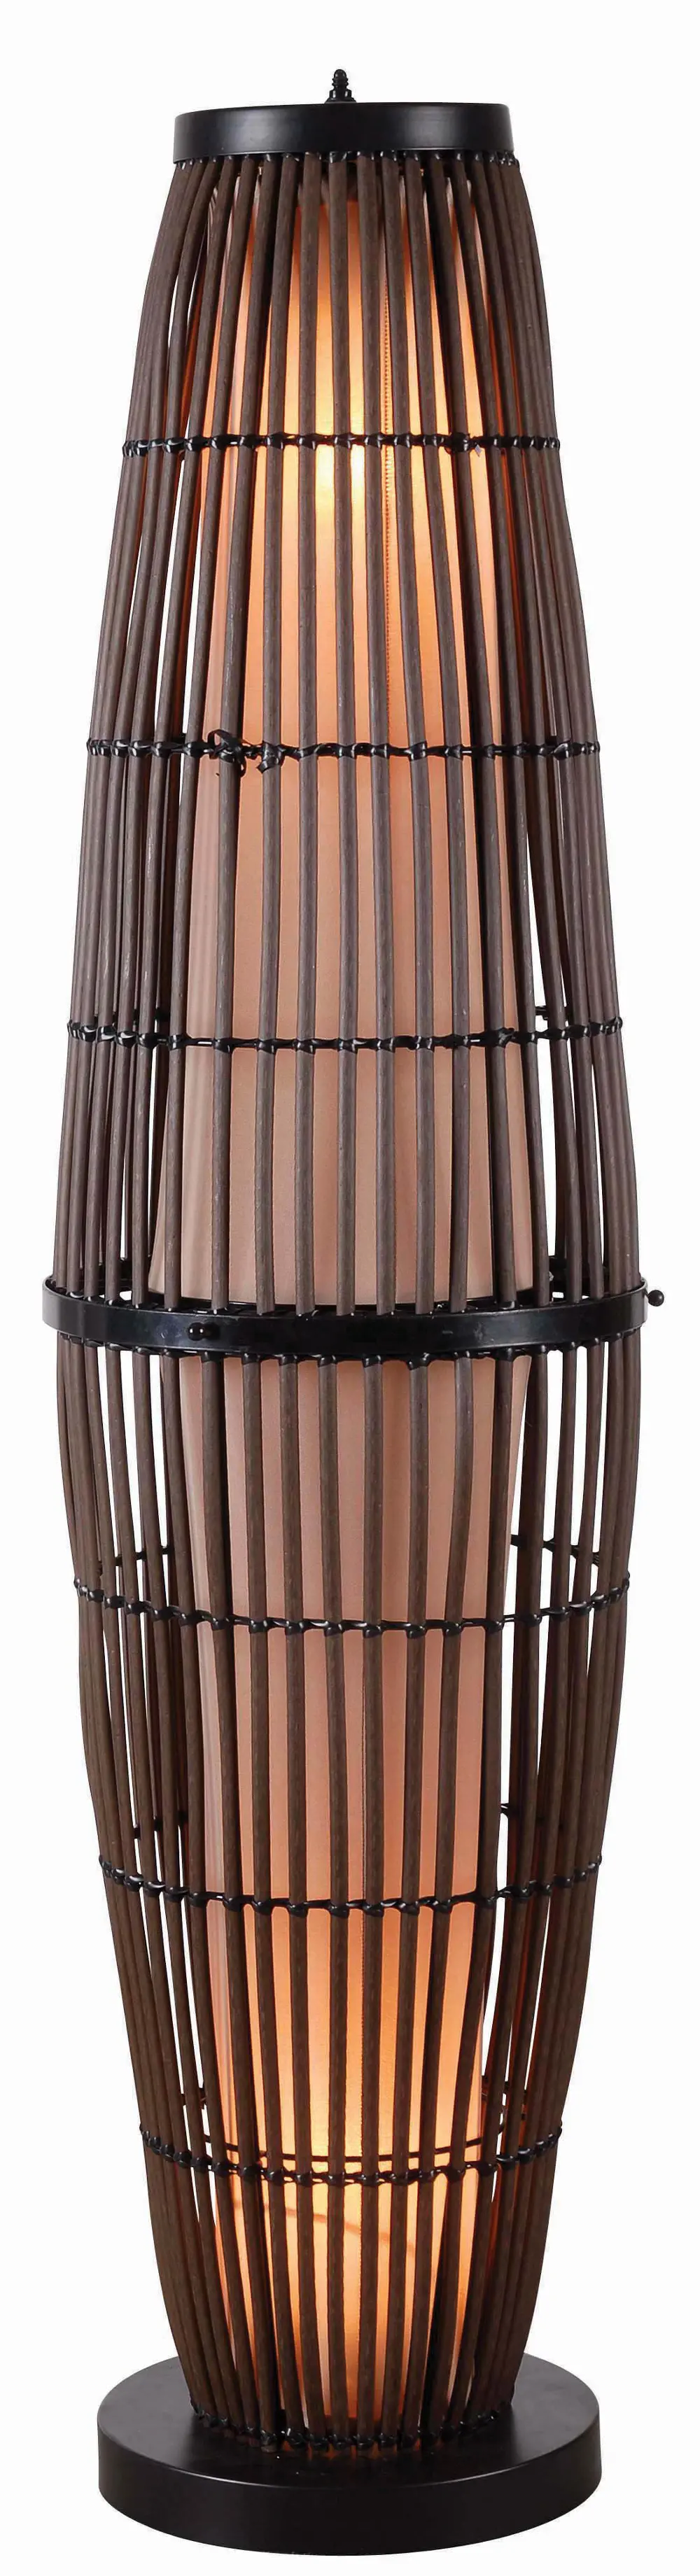 Rattan Outdoor Floor Lamp with Bronze Accents - Biscayne-1